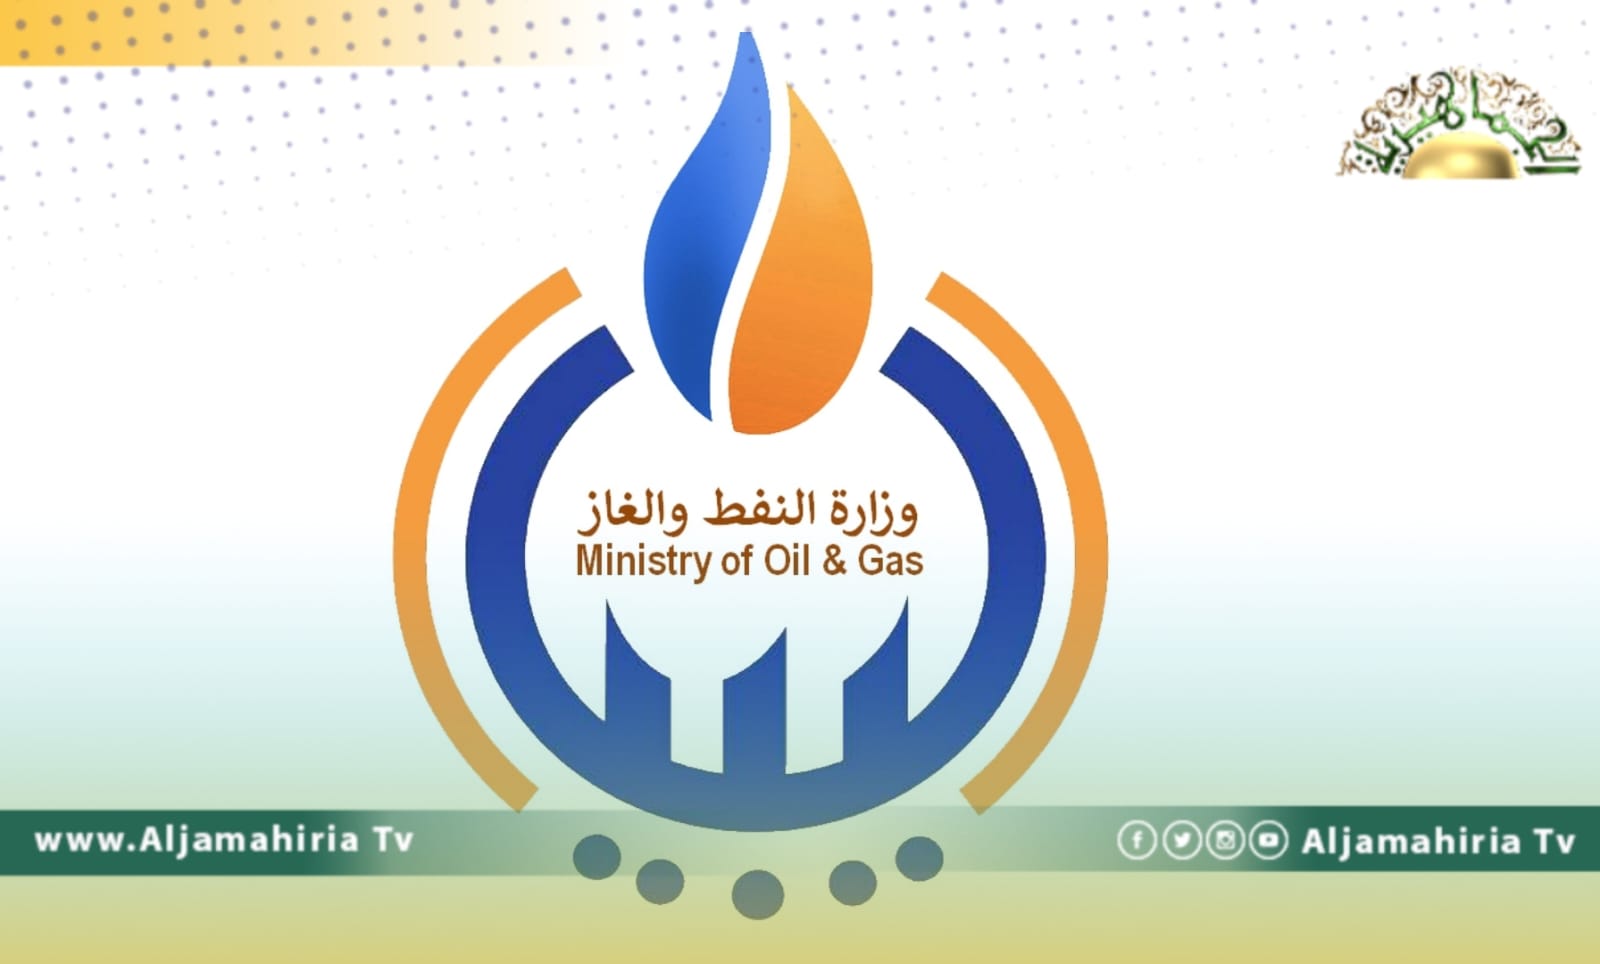 النفط توصي بأن يكون الإطار الزمني لمذكرة التفاهم التركية مع ليبيا في مجال الطاقة عام واحد فقط